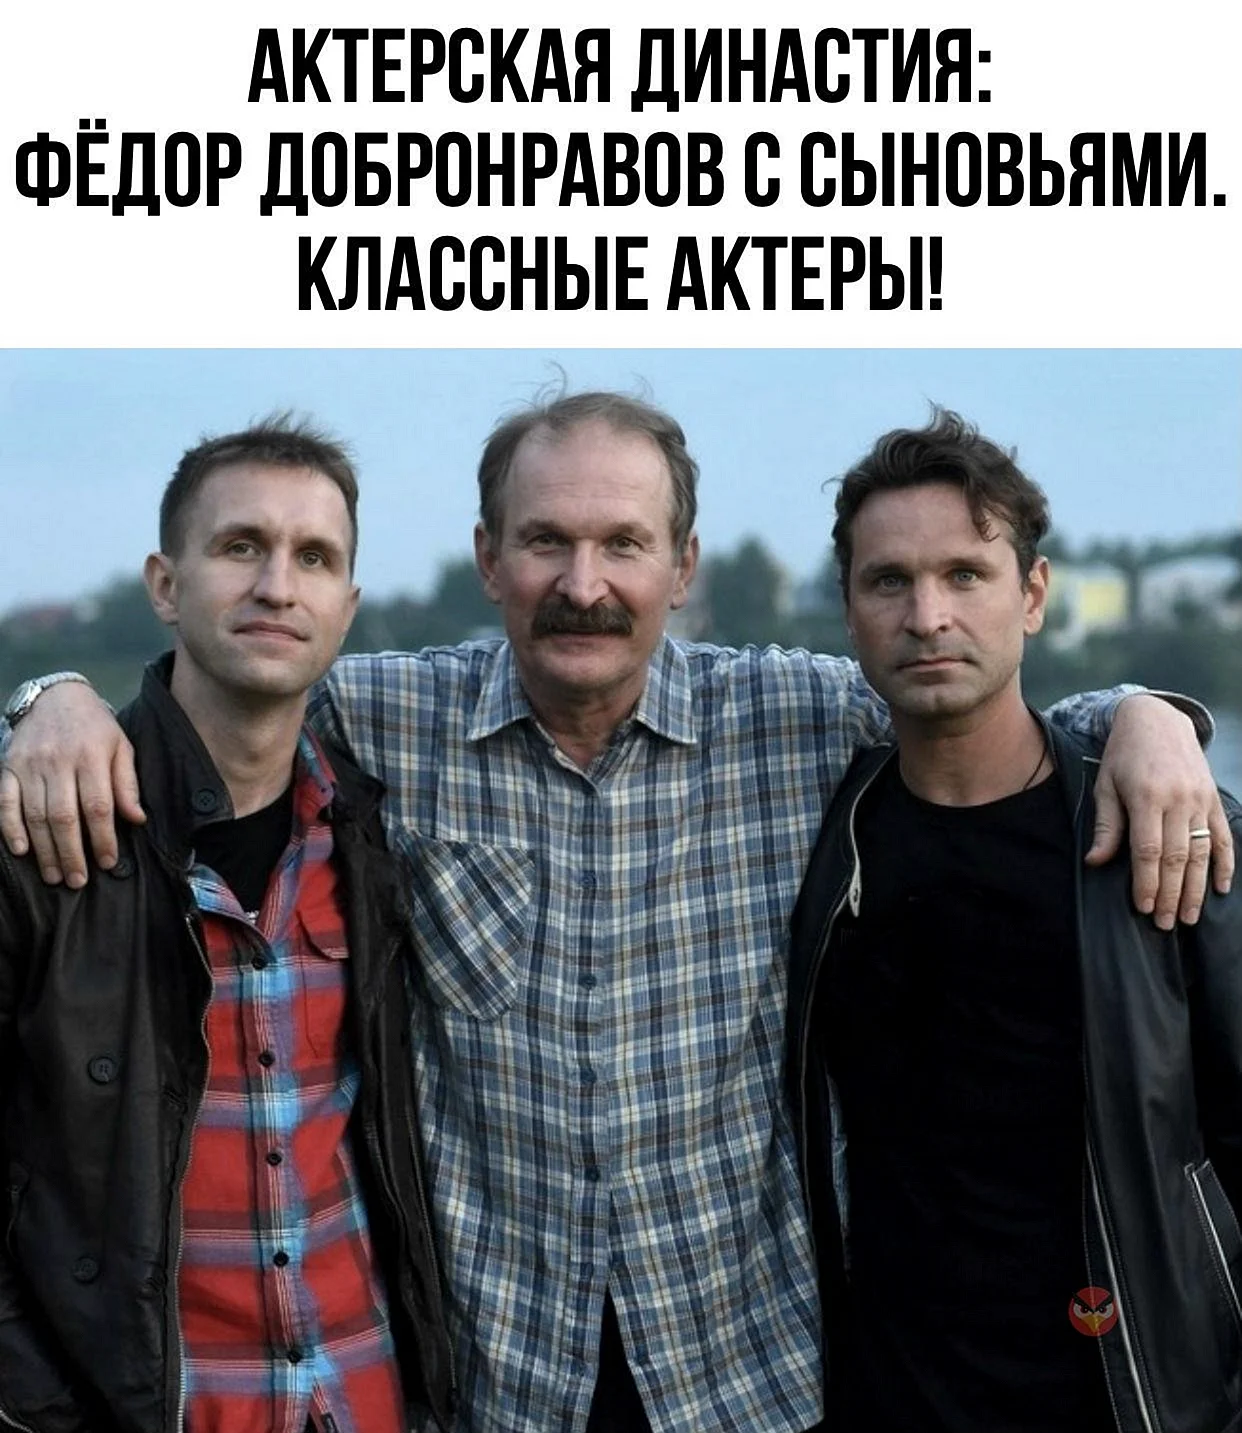 Фёдор Добронравов с сыновьями